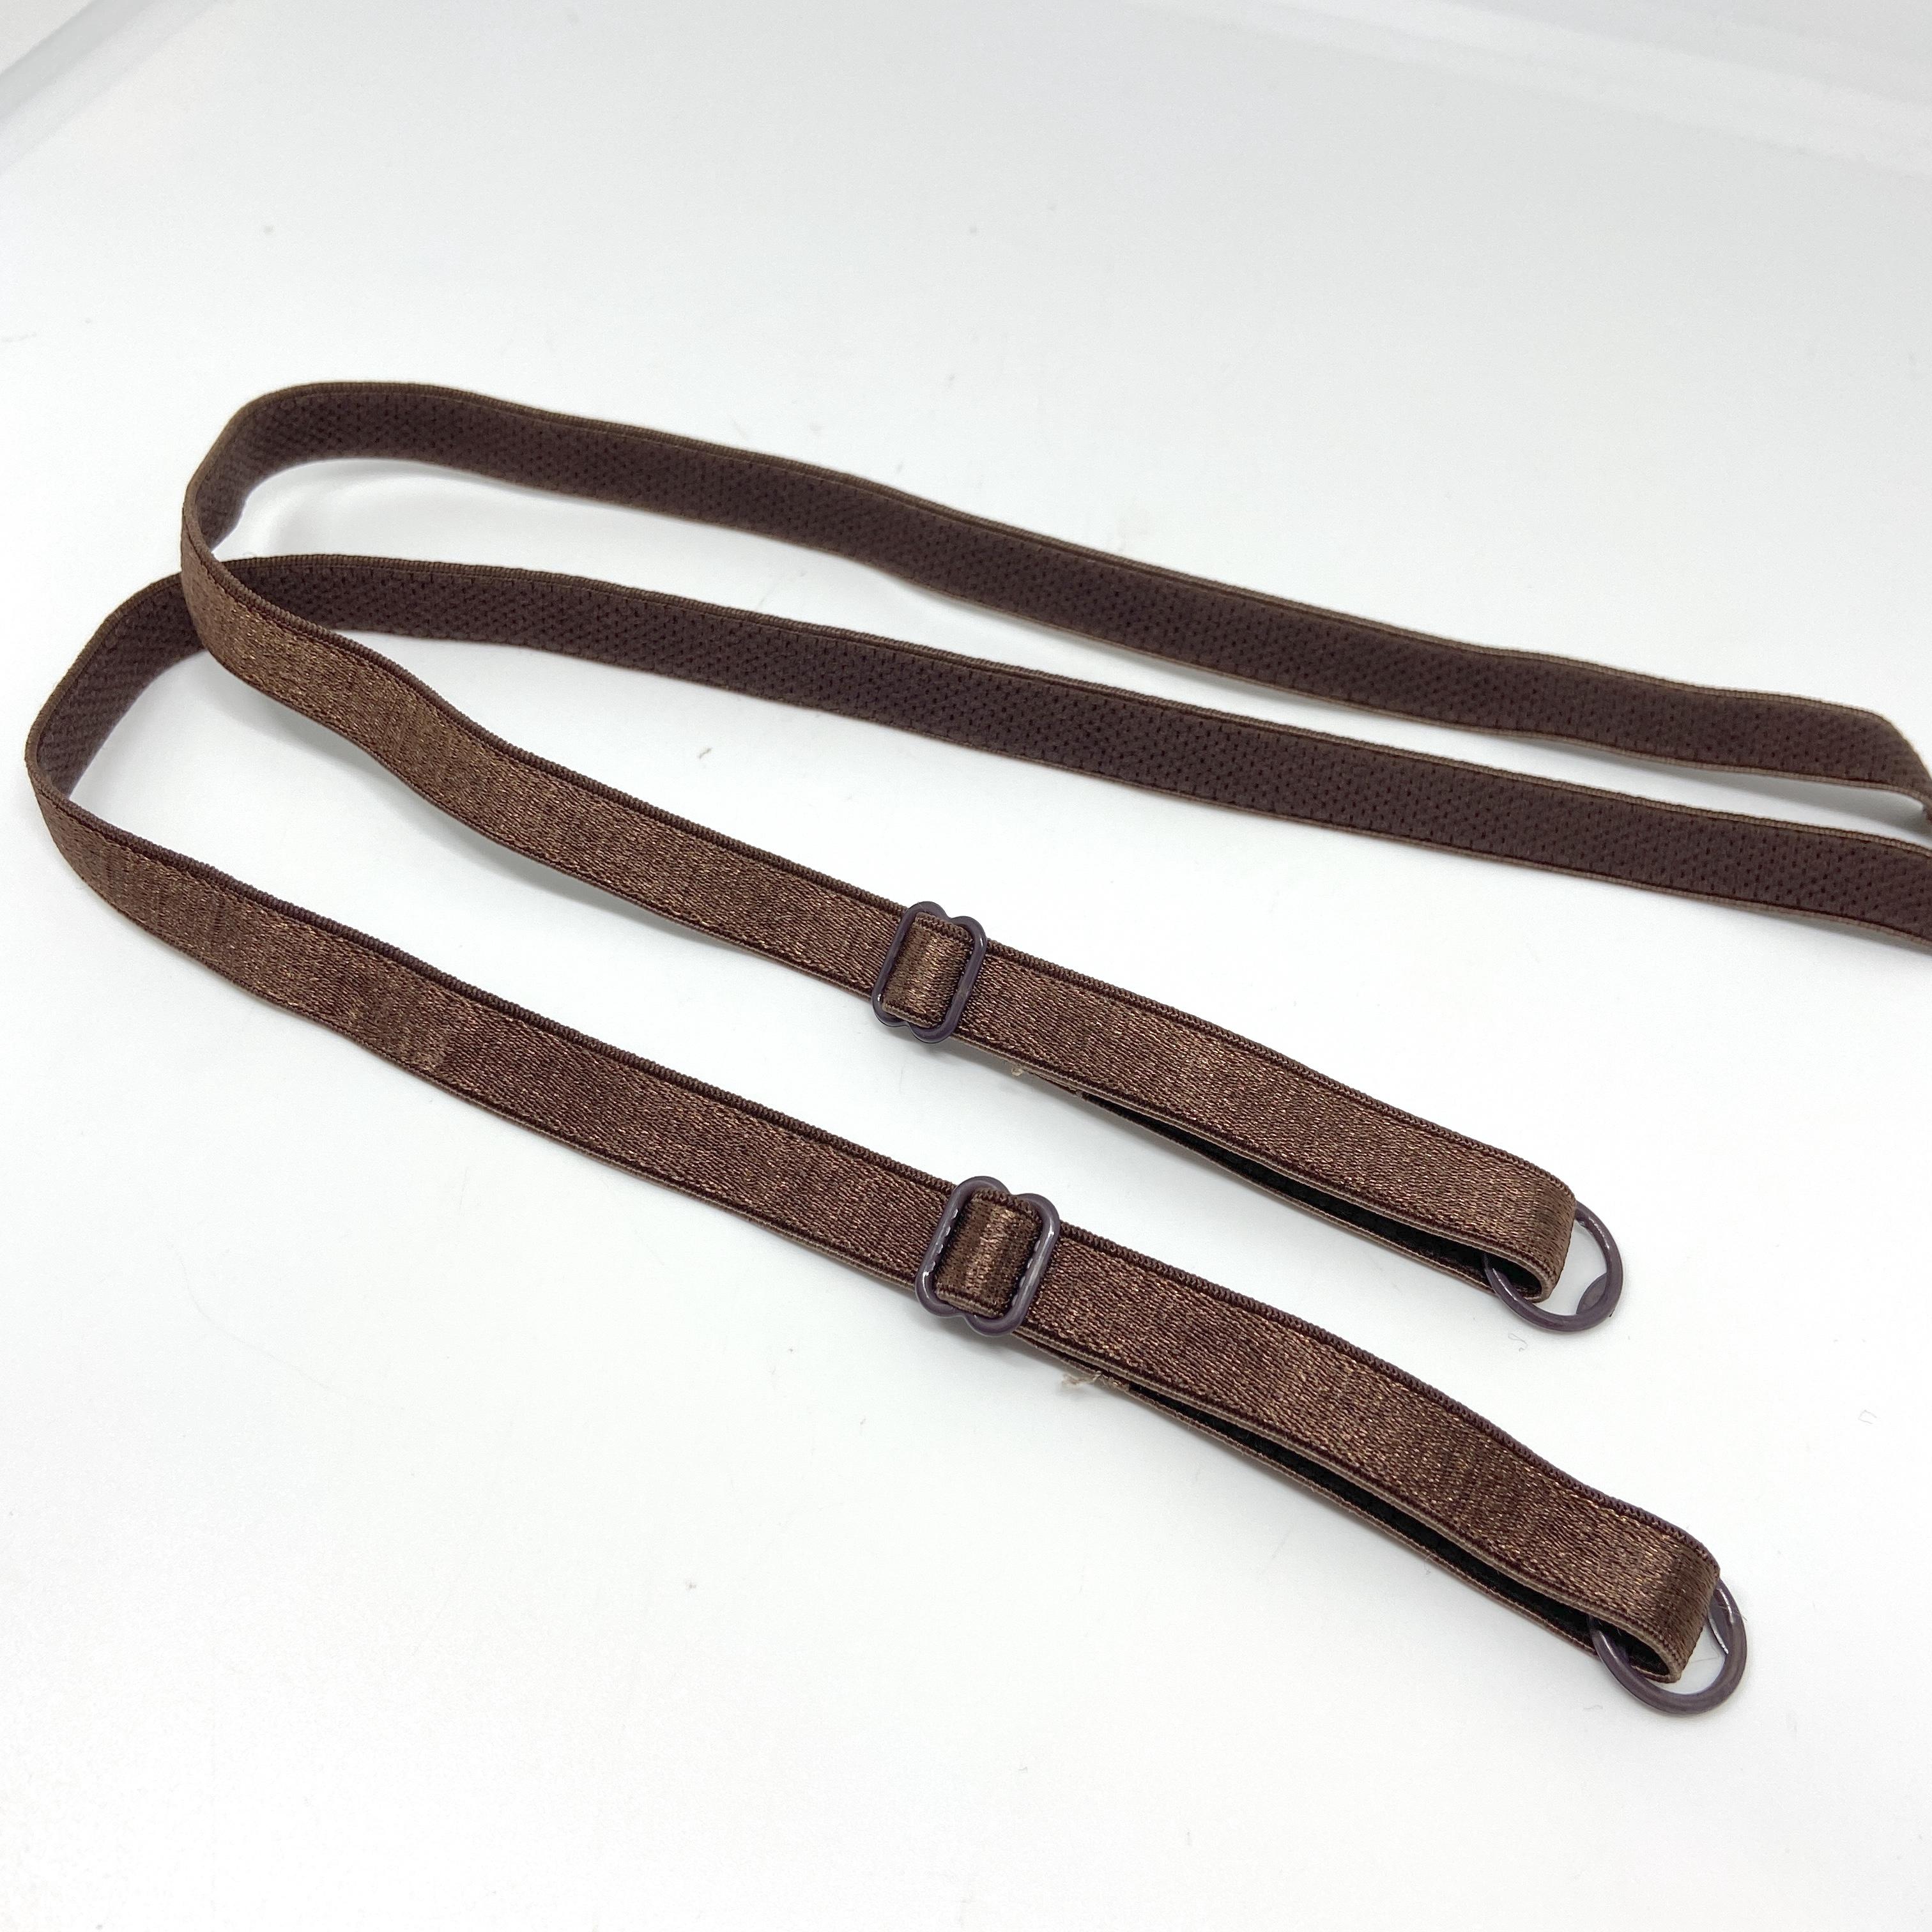 Bra Straps - Sew on - Full Length, 42cm long - 10mm - Bronze BROWN, per pair